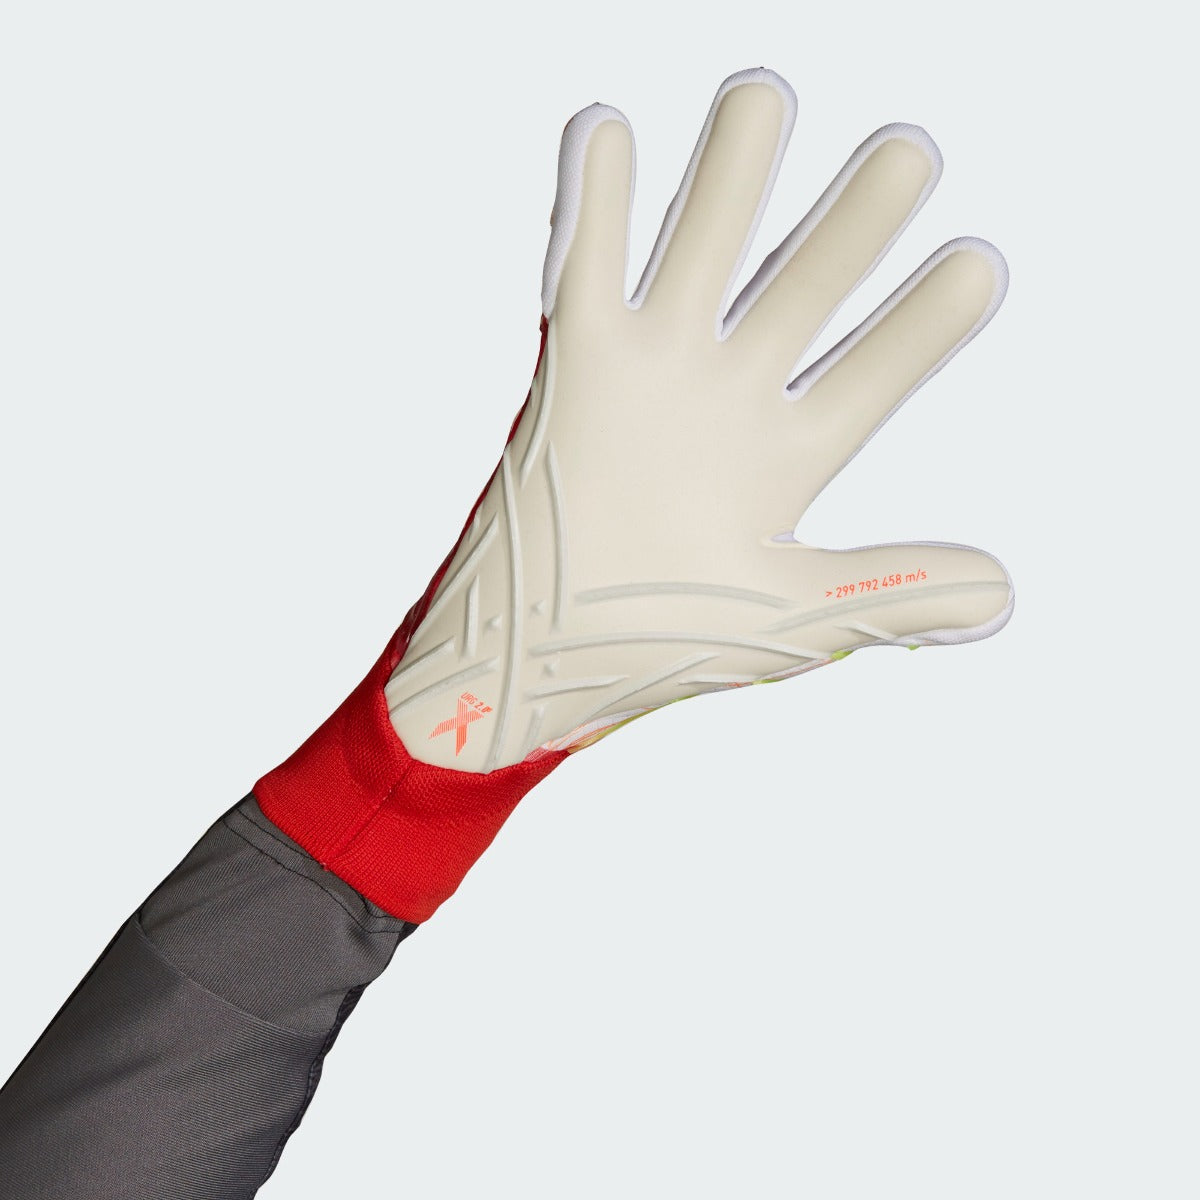 Adidas X PRO Goalkeeper Gloves - Solar Red (Single - Inner)